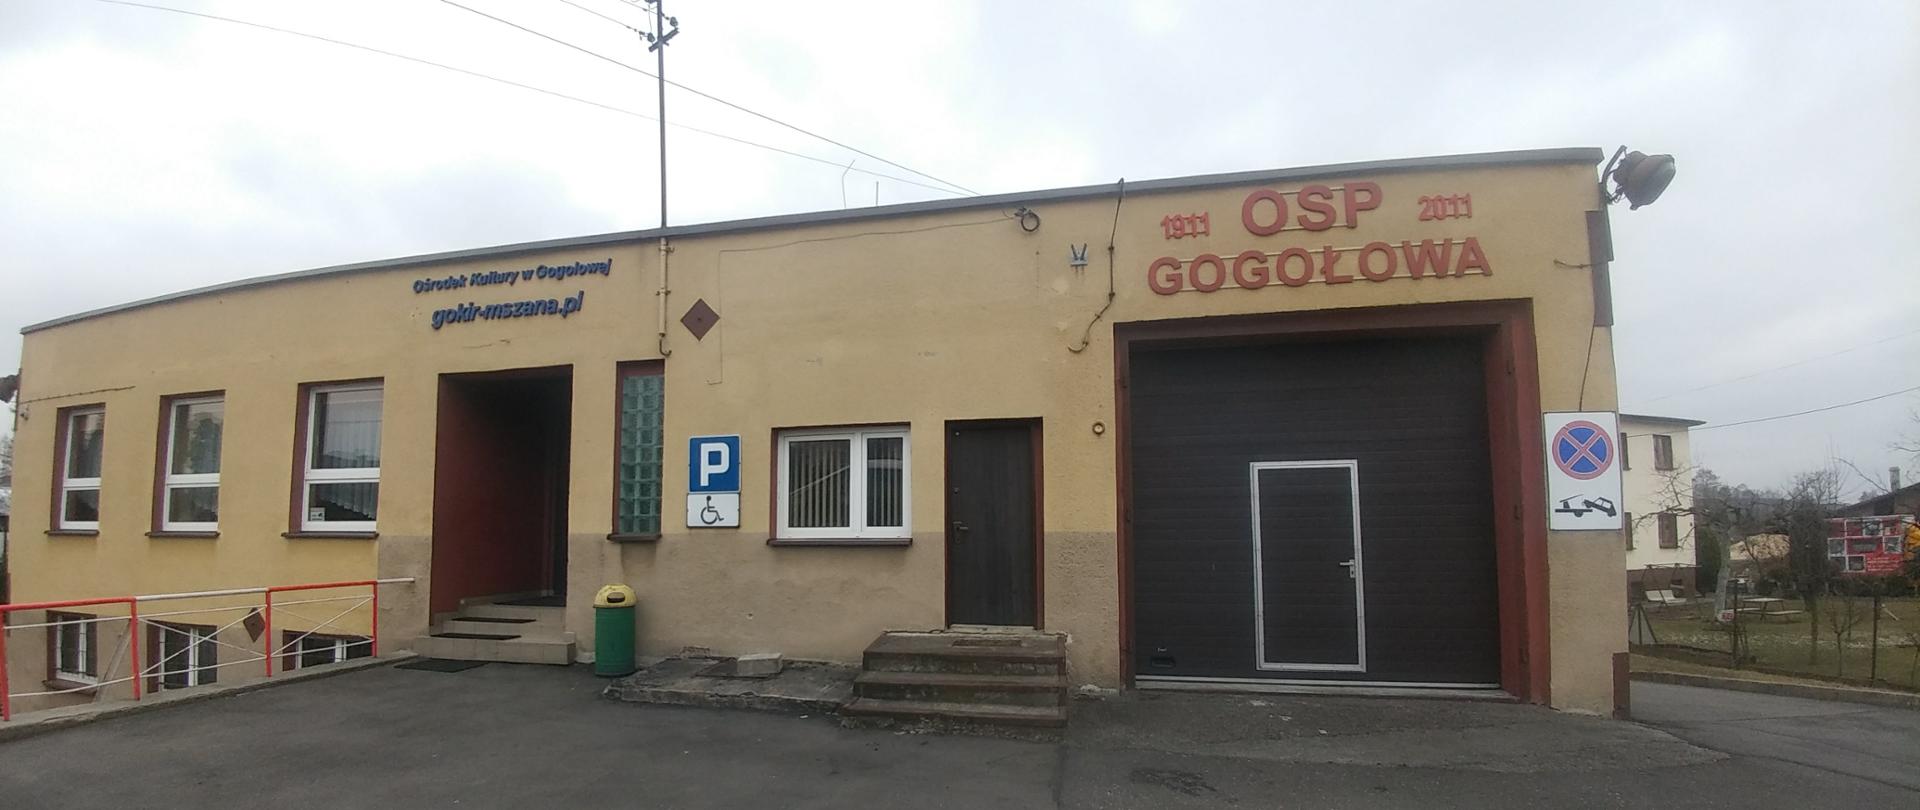 Zdjęcie prezentuje budynek jednostki OSP Gogołowa